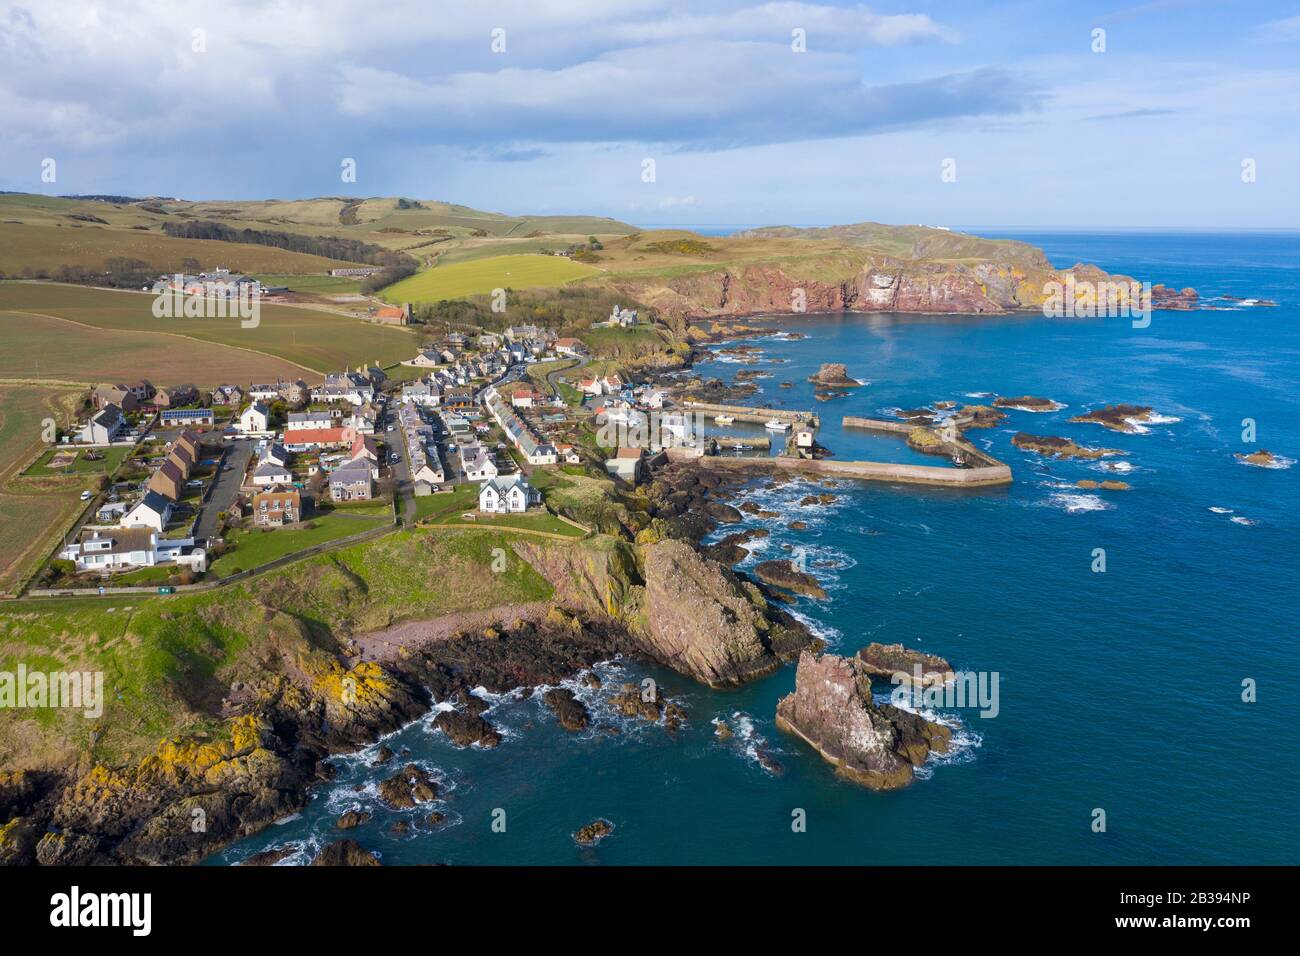 Vue aérienne du petit village de pêcheurs et du port de St Abbs sur la côte de la mer du Nord à Scottish Borders, Écosse, Royaume-Uni Banque D'Images